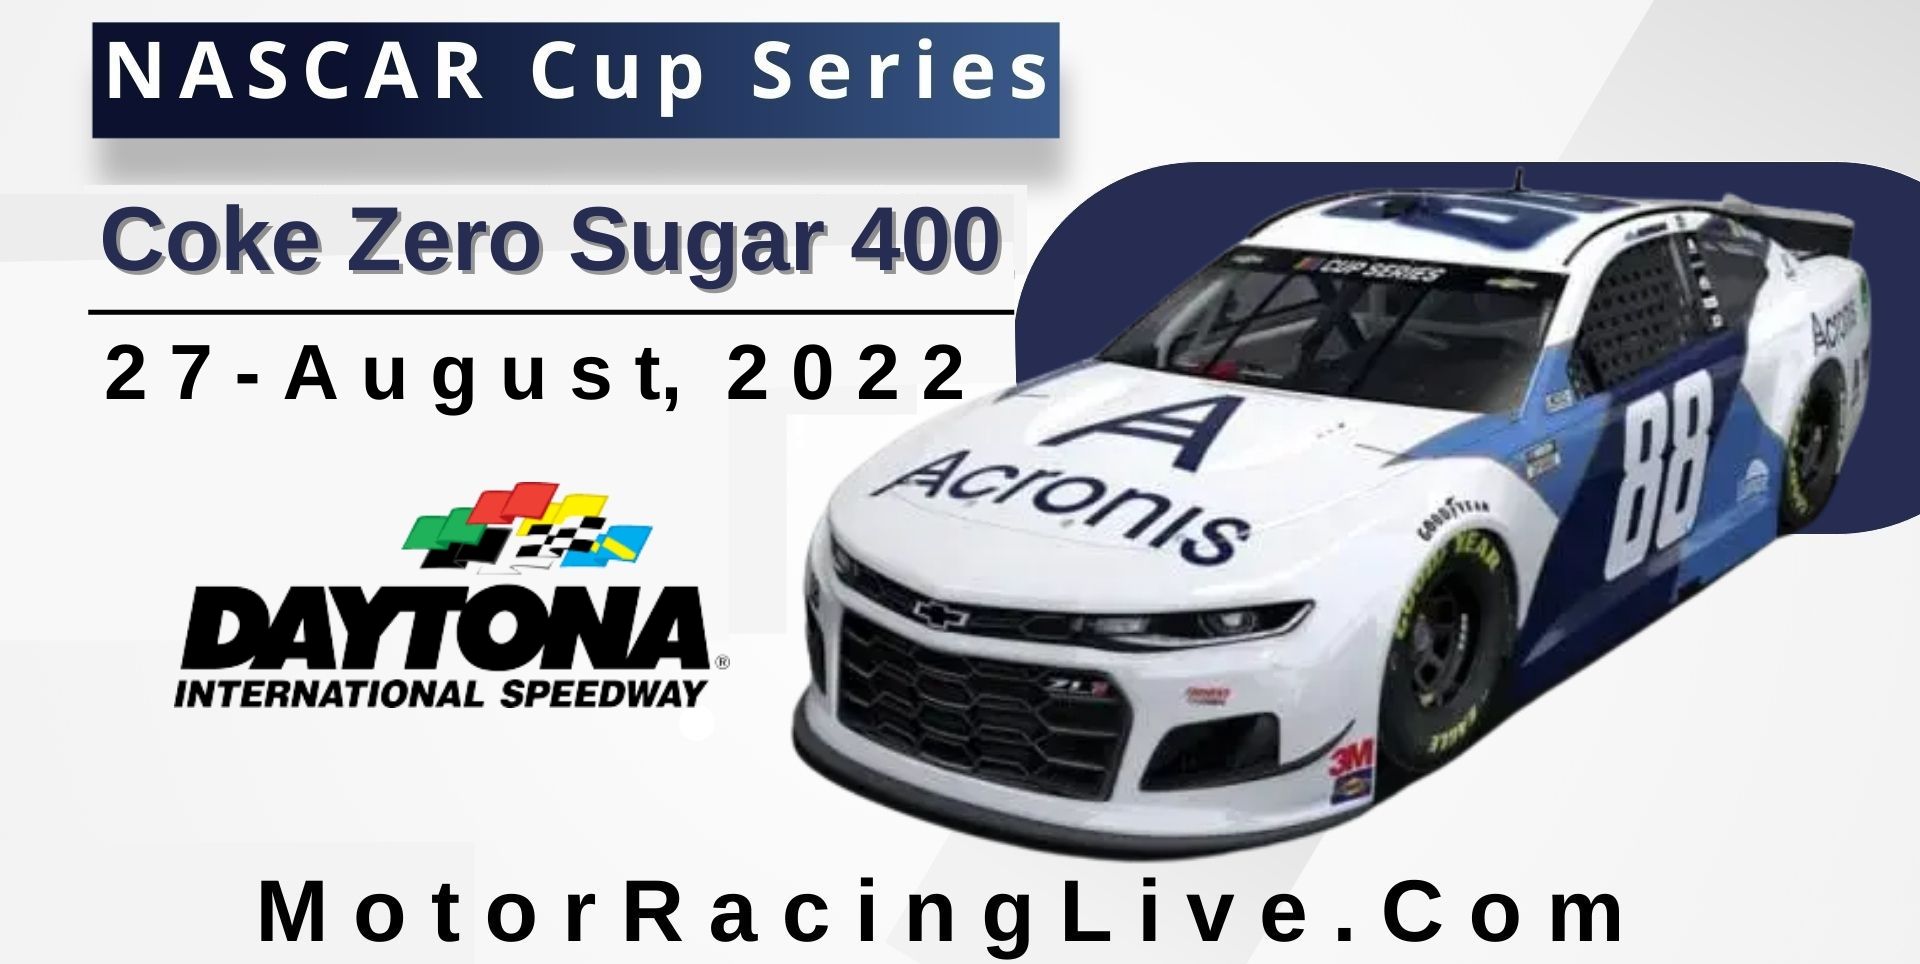 Coke Zero Sugar 400 NASCAR Cup 2022 Live Stream